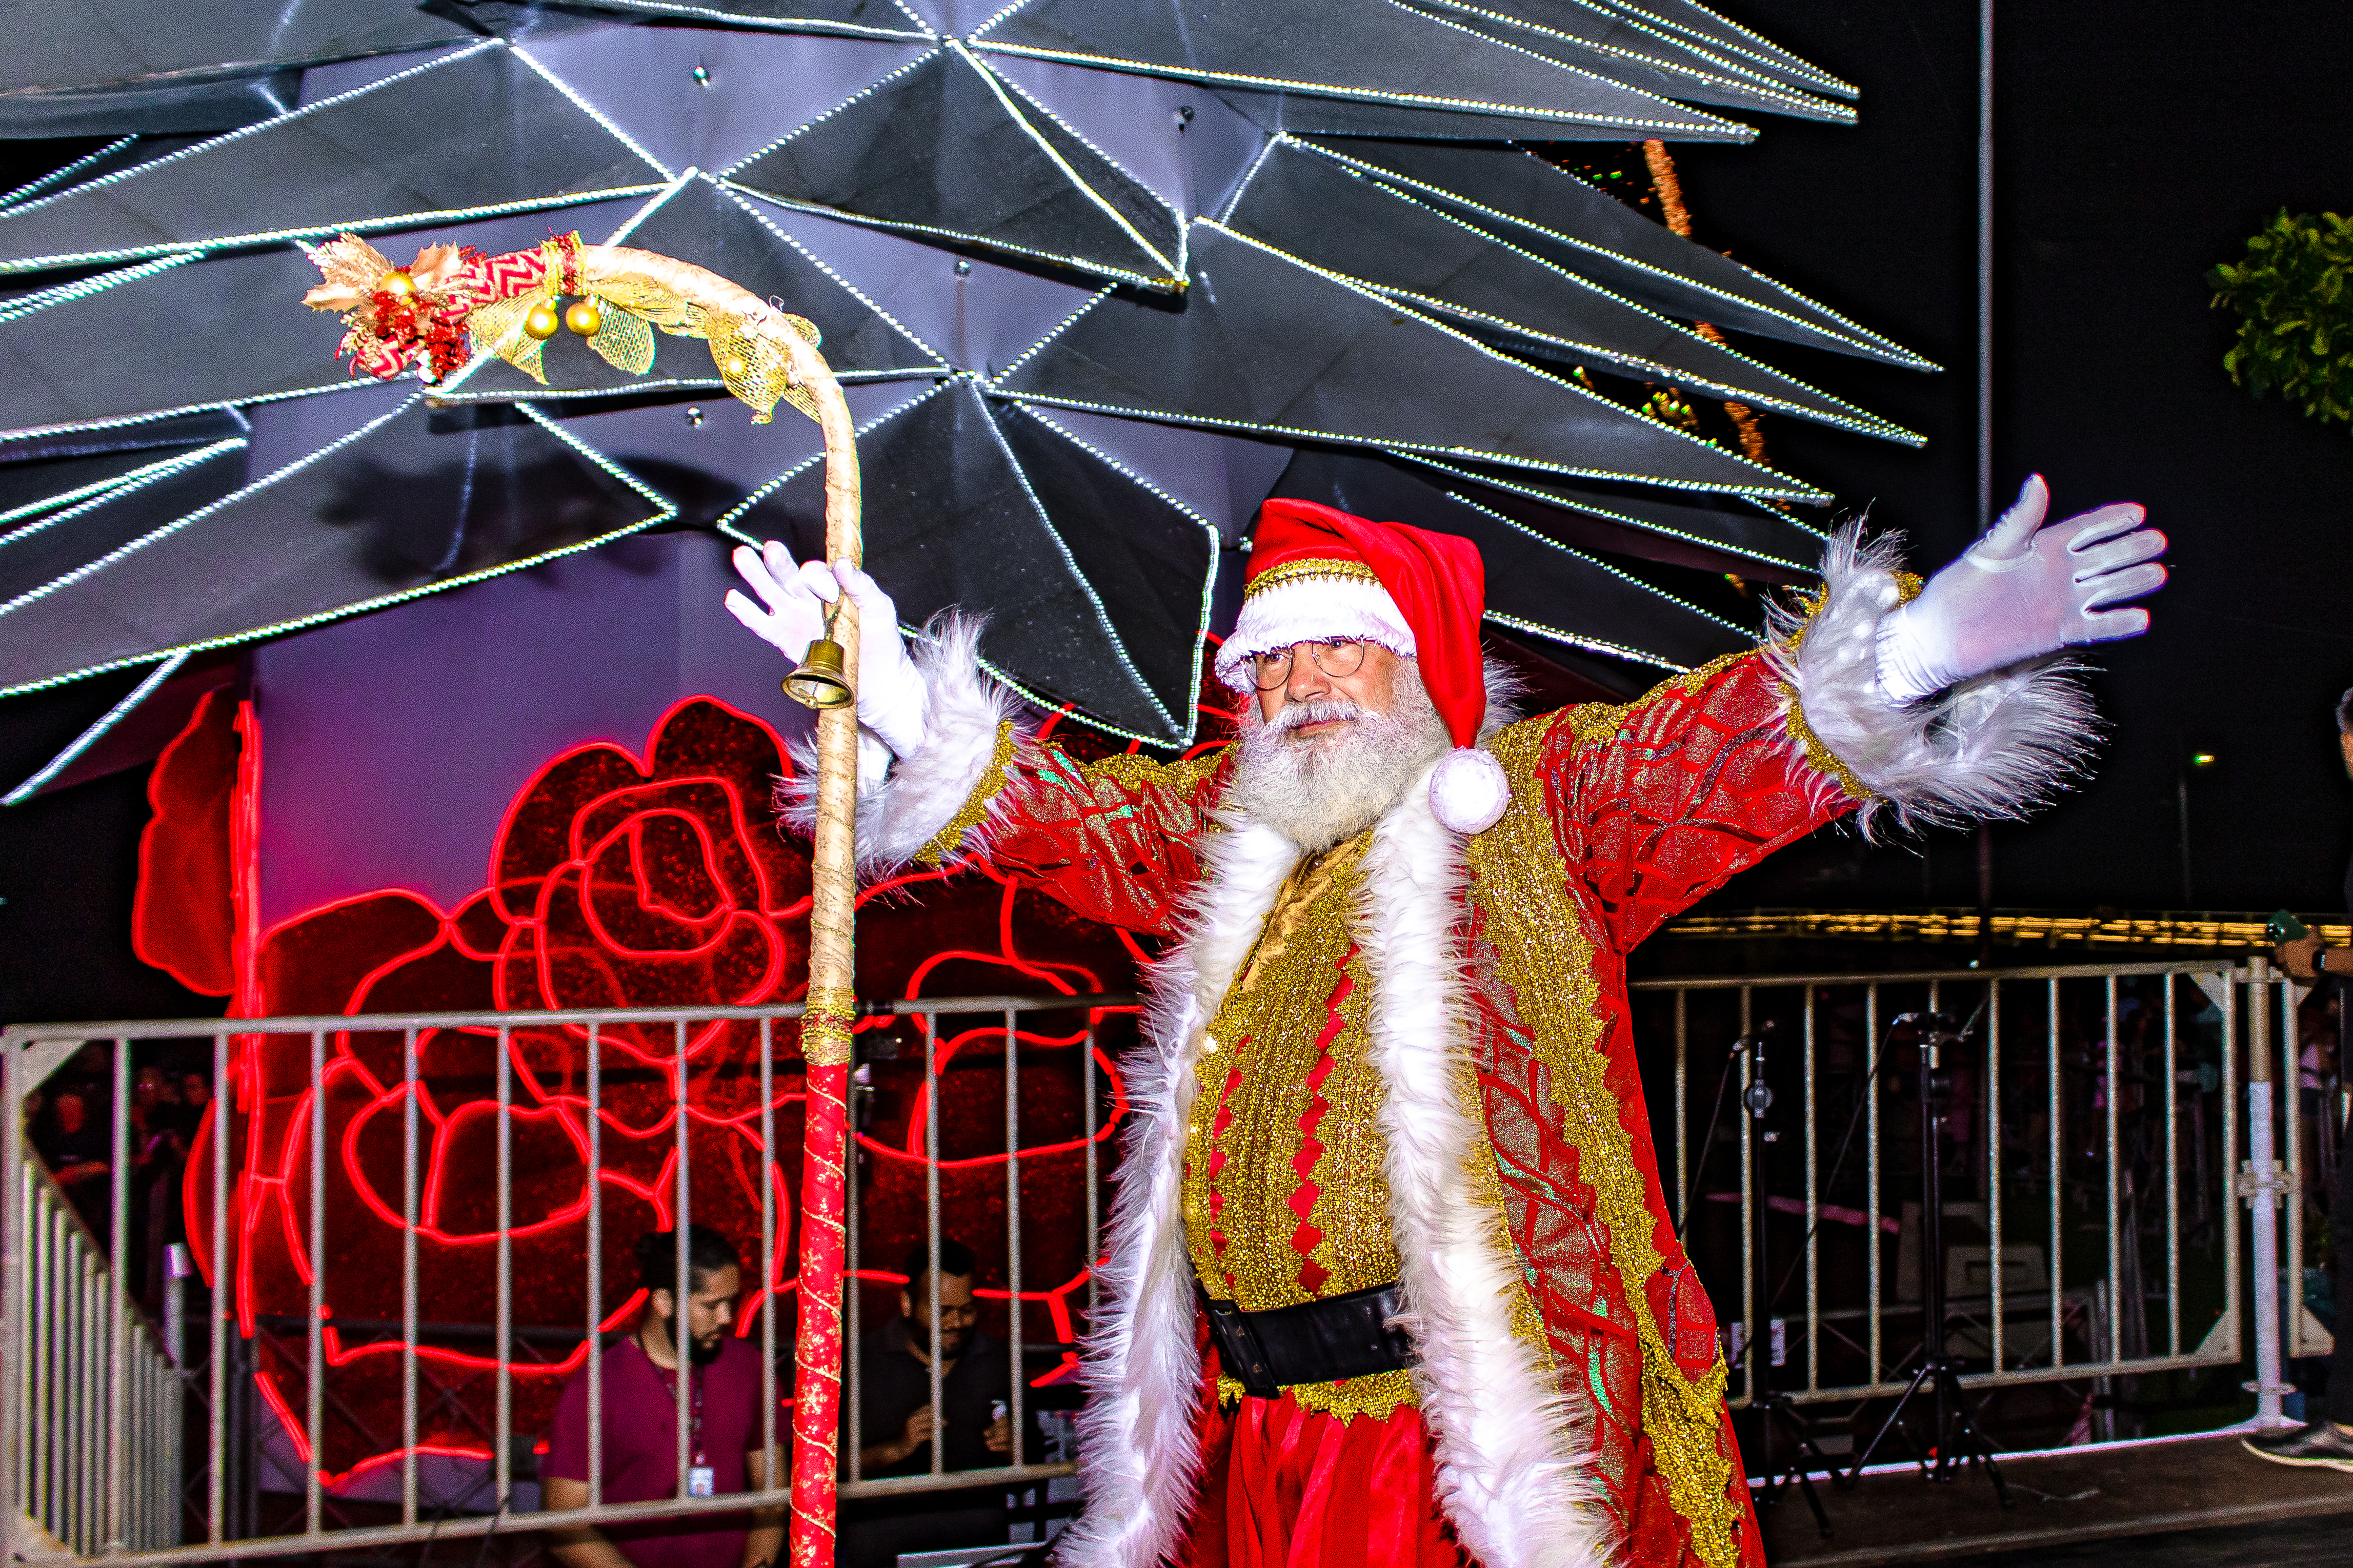 Parada de Natal, música, dança, teatro, luzes e emoção estão na programação natalina de Bertioga; confira!